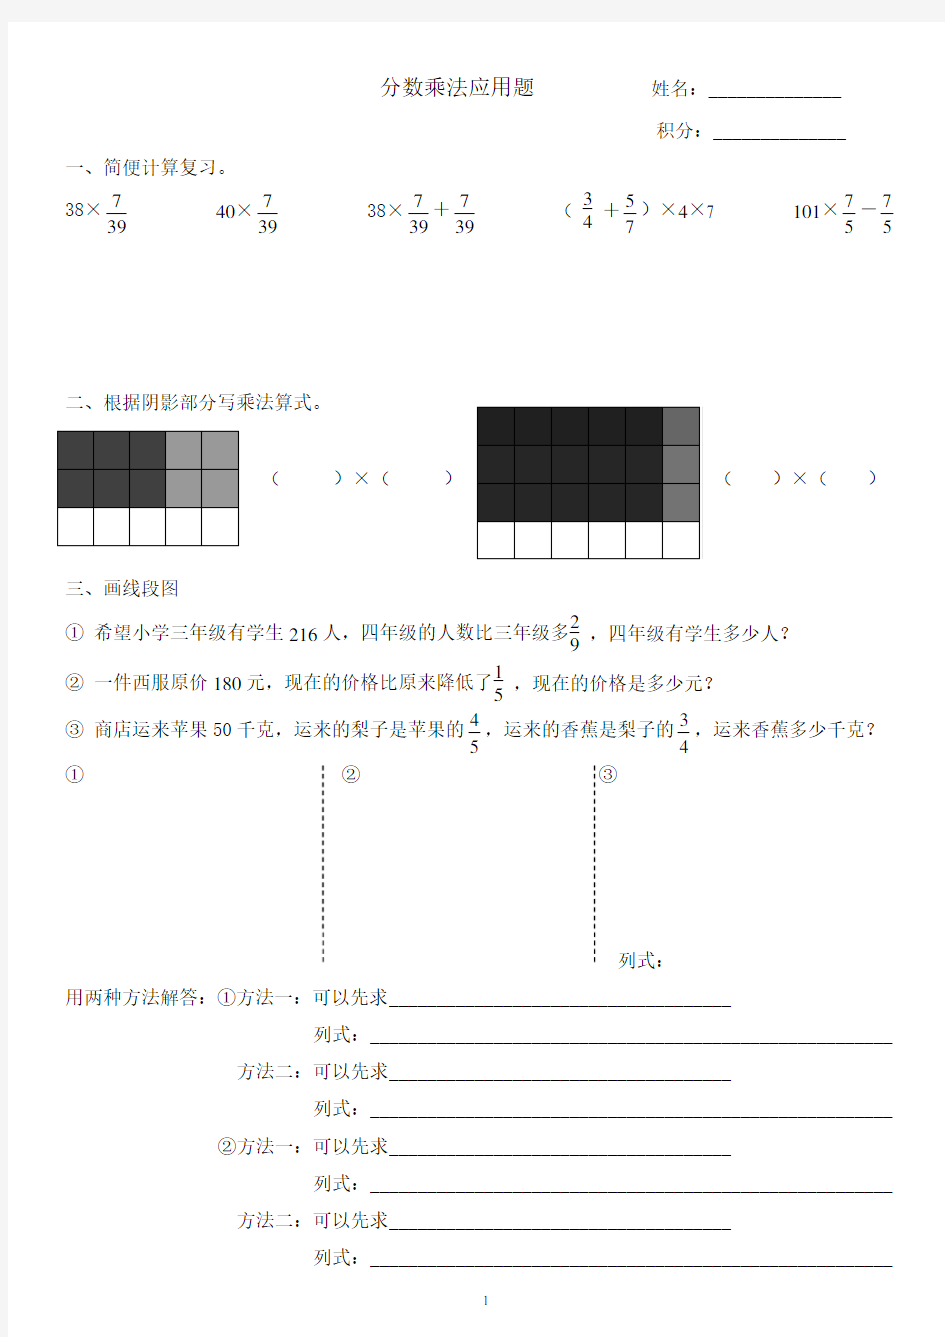 新人教版六年级数学上册分数乘法应用题画线段图练习